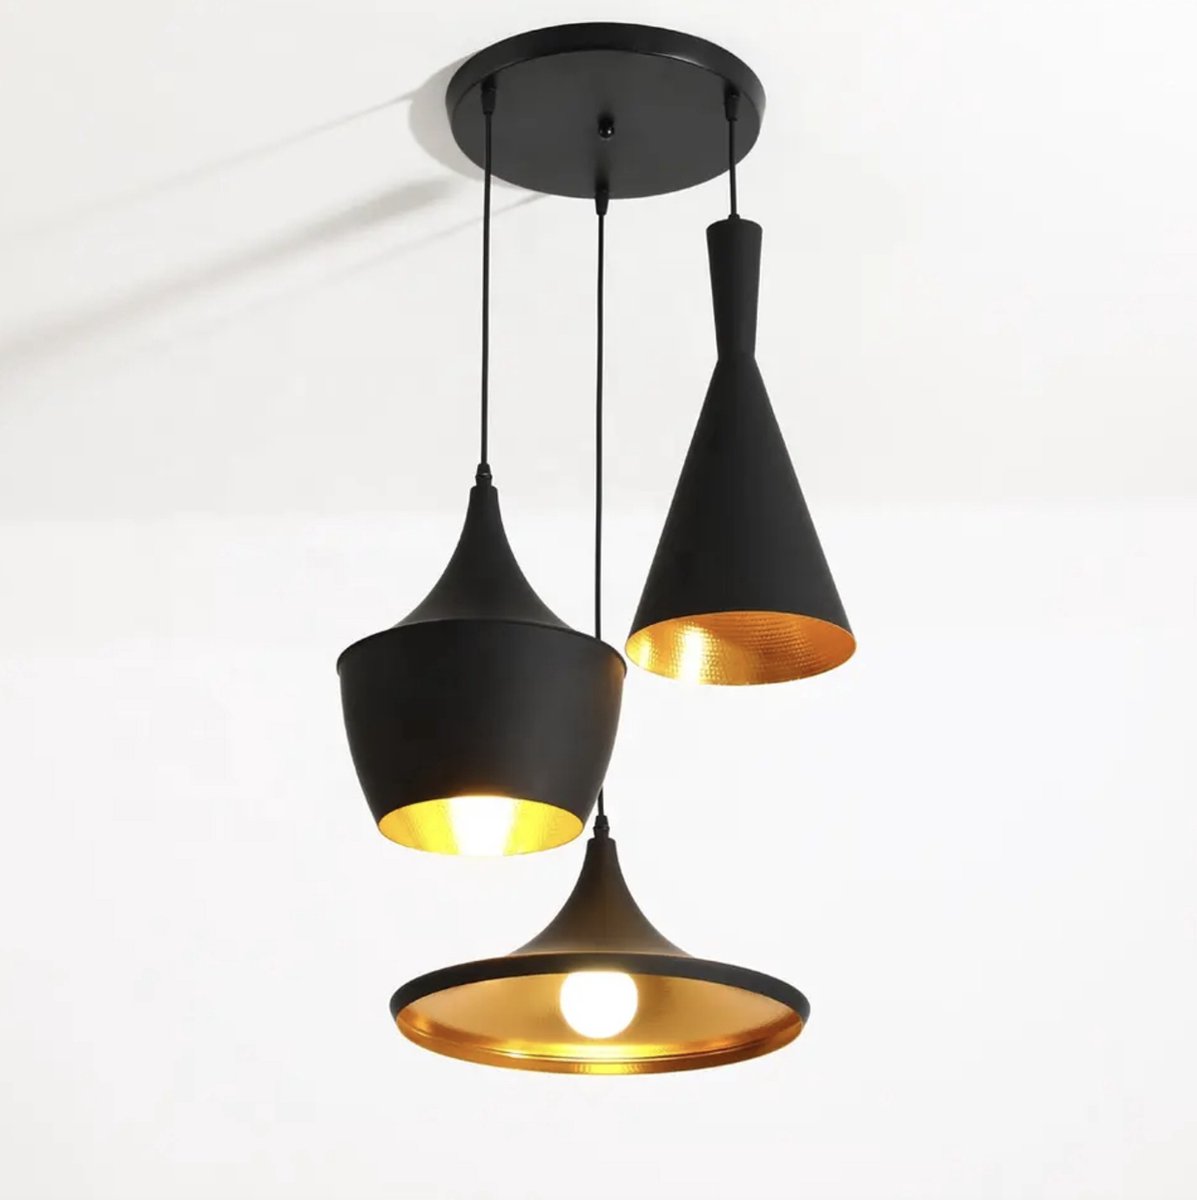 Orion Store - Hanglamp Set van 3 Zwart/Goud - Industrieel Plafondlamp van Metaal met Gouden Binnenlaag - Retro Vintage Design voor Eetkamer/Woonkamer - Exclusief Lichtbron